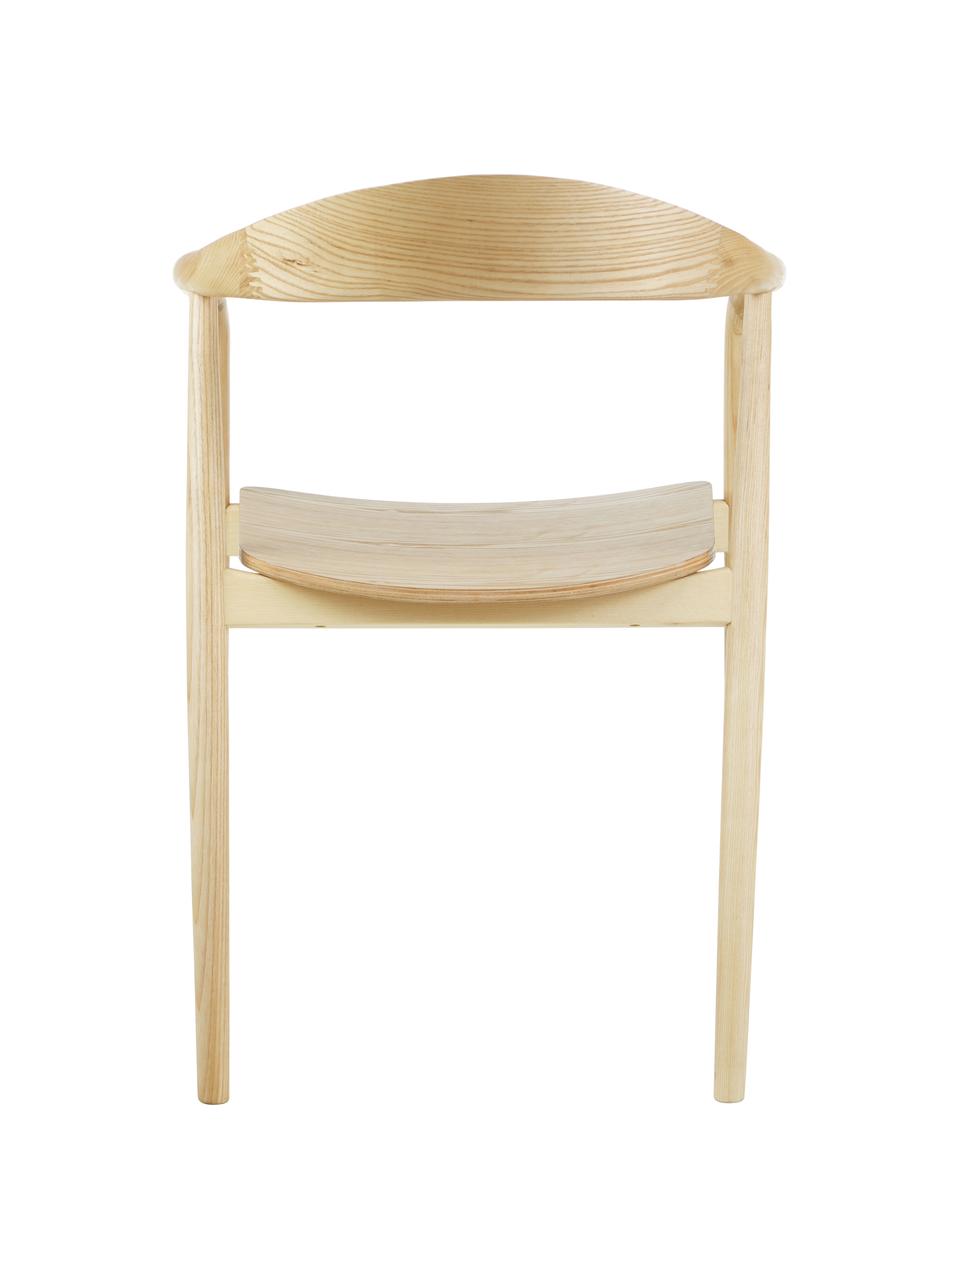 Židle s područkami z masivního dřeva Angelina, Hnědá